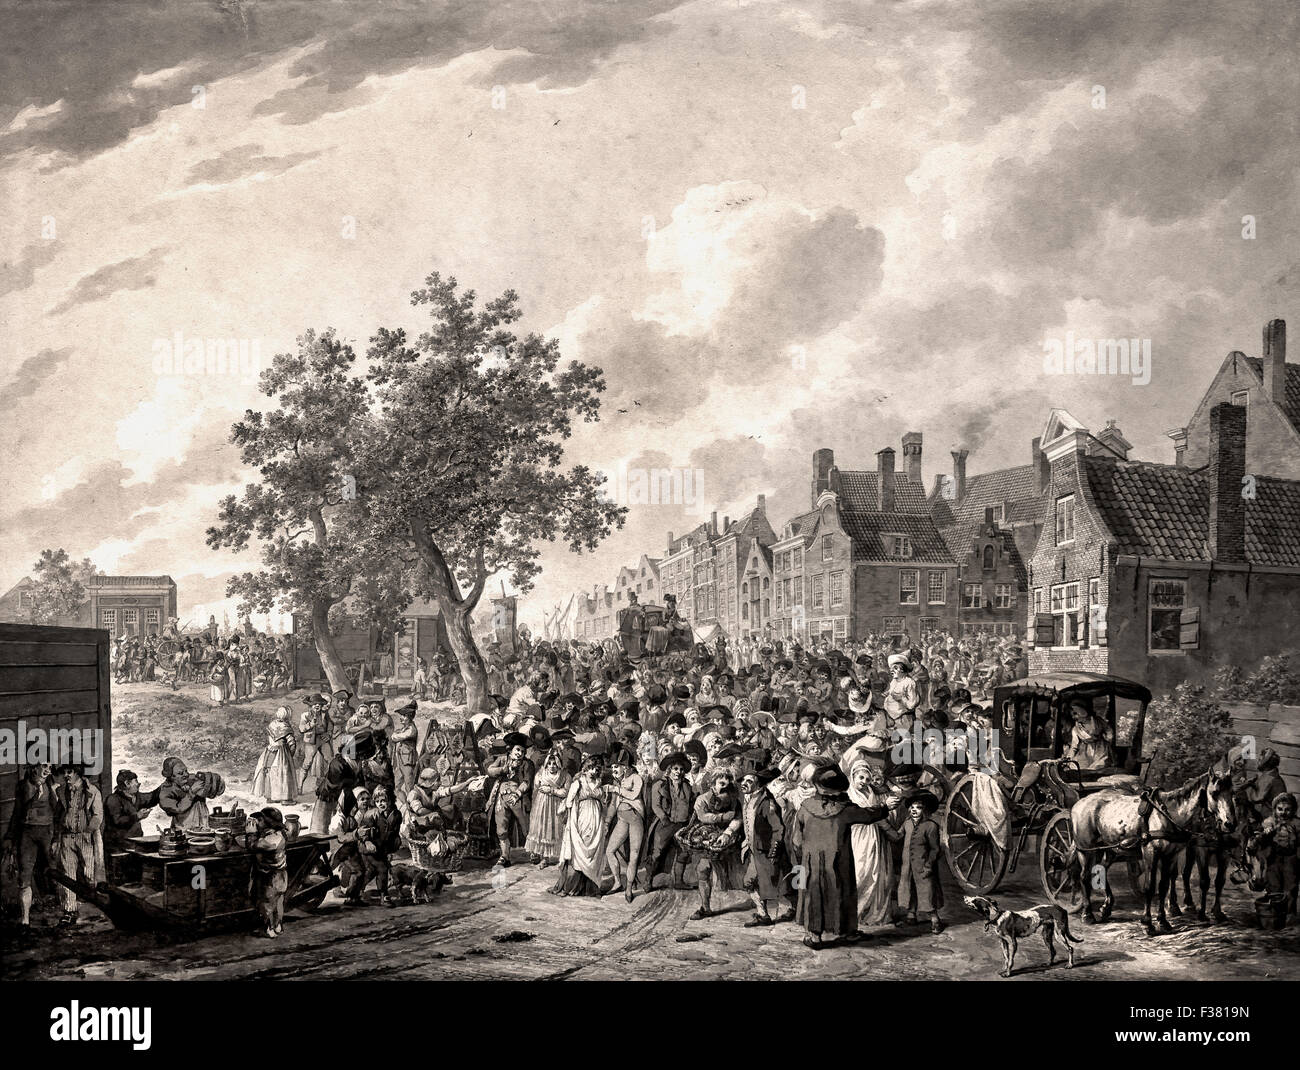 Une grande foule qui s'amassait sur la périphérie d'une ville 1797 1776 1813 Christoffel Meijer - Néerlandais Pays-Bas dimensions Banque D'Images